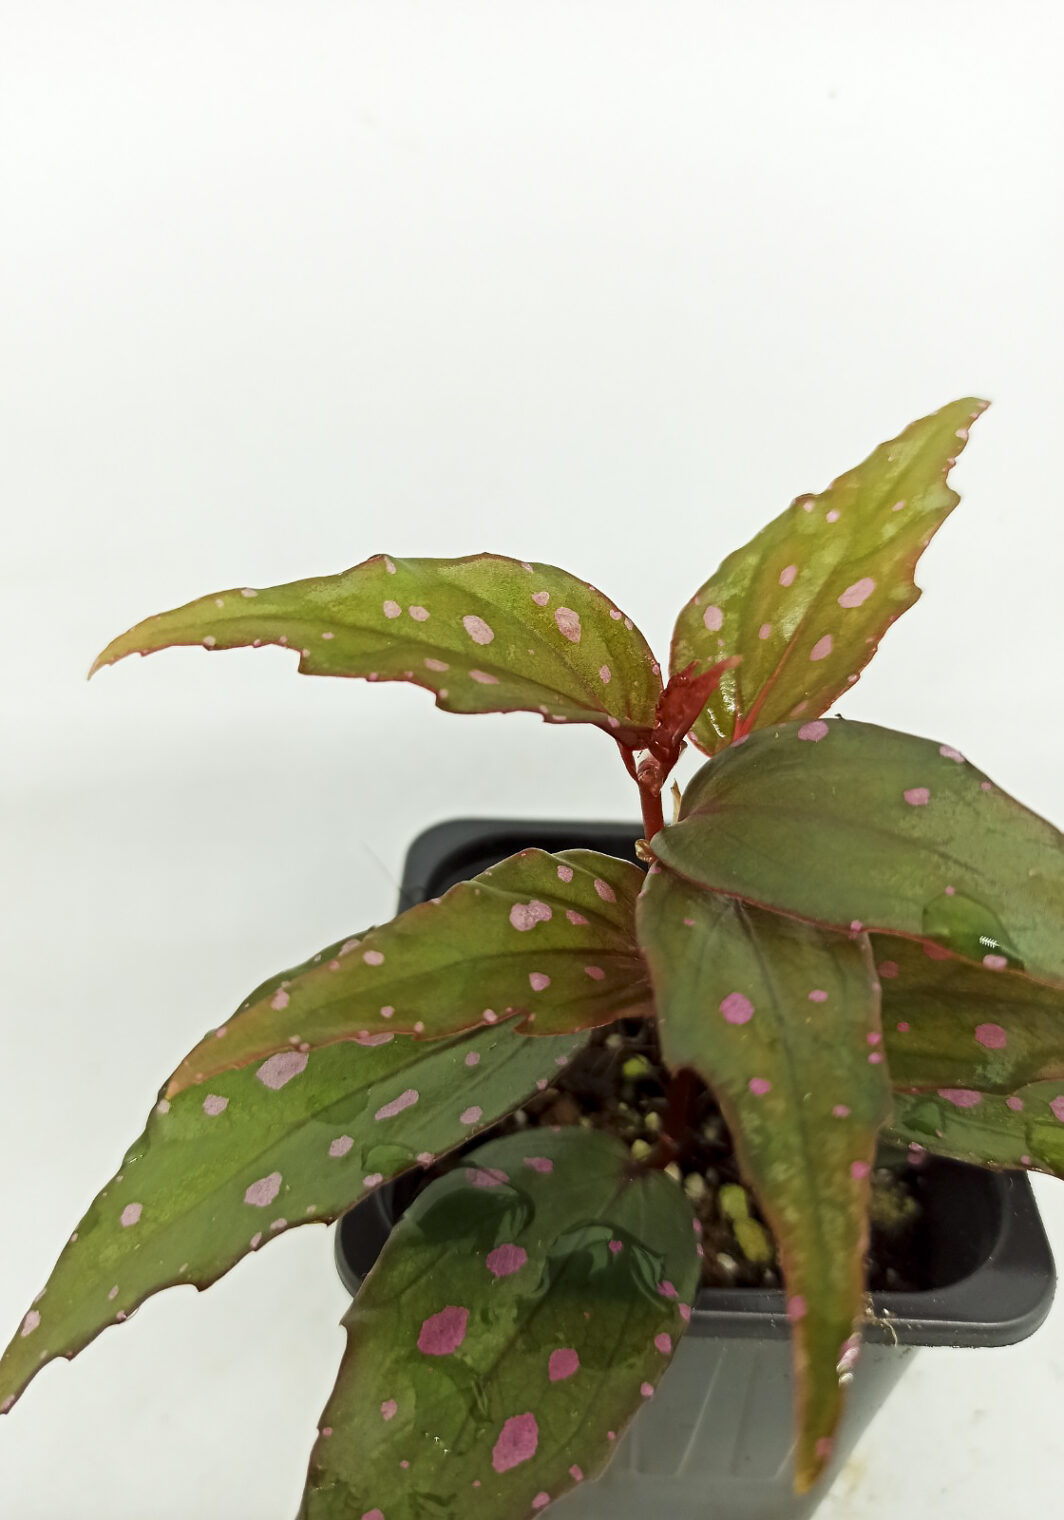 Begonia sp. menukung